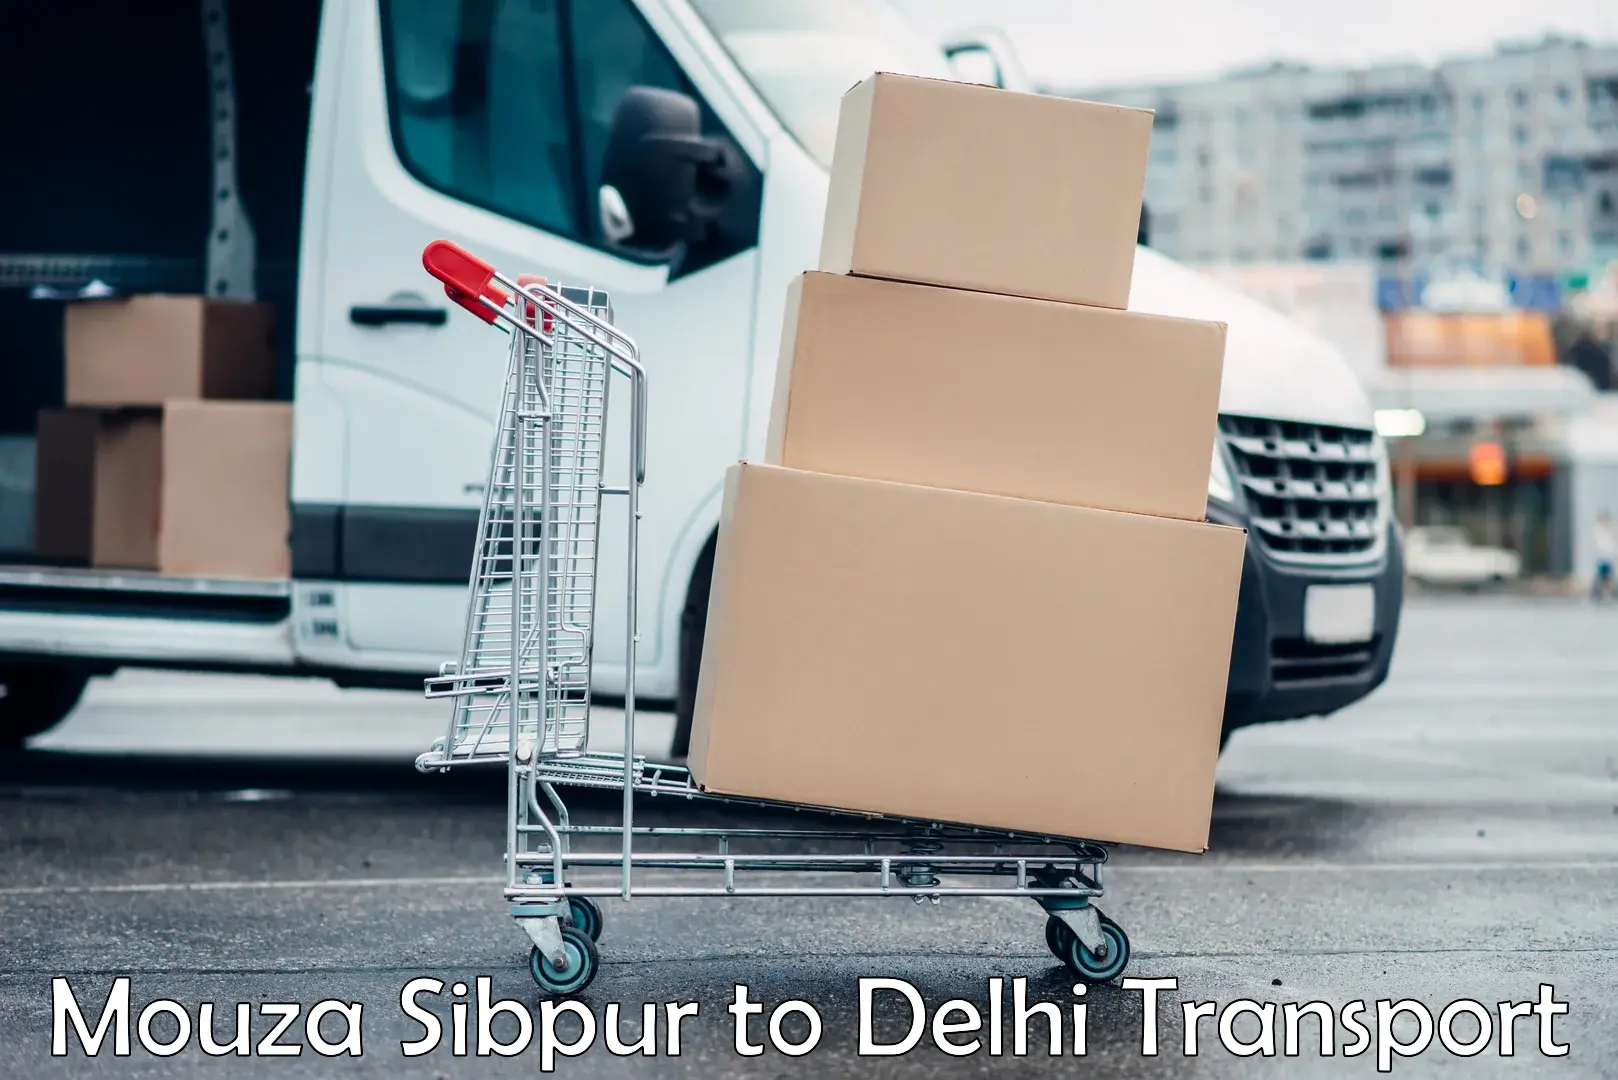 Parcel transport services Mouza Sibpur to Delhi Technological University DTU